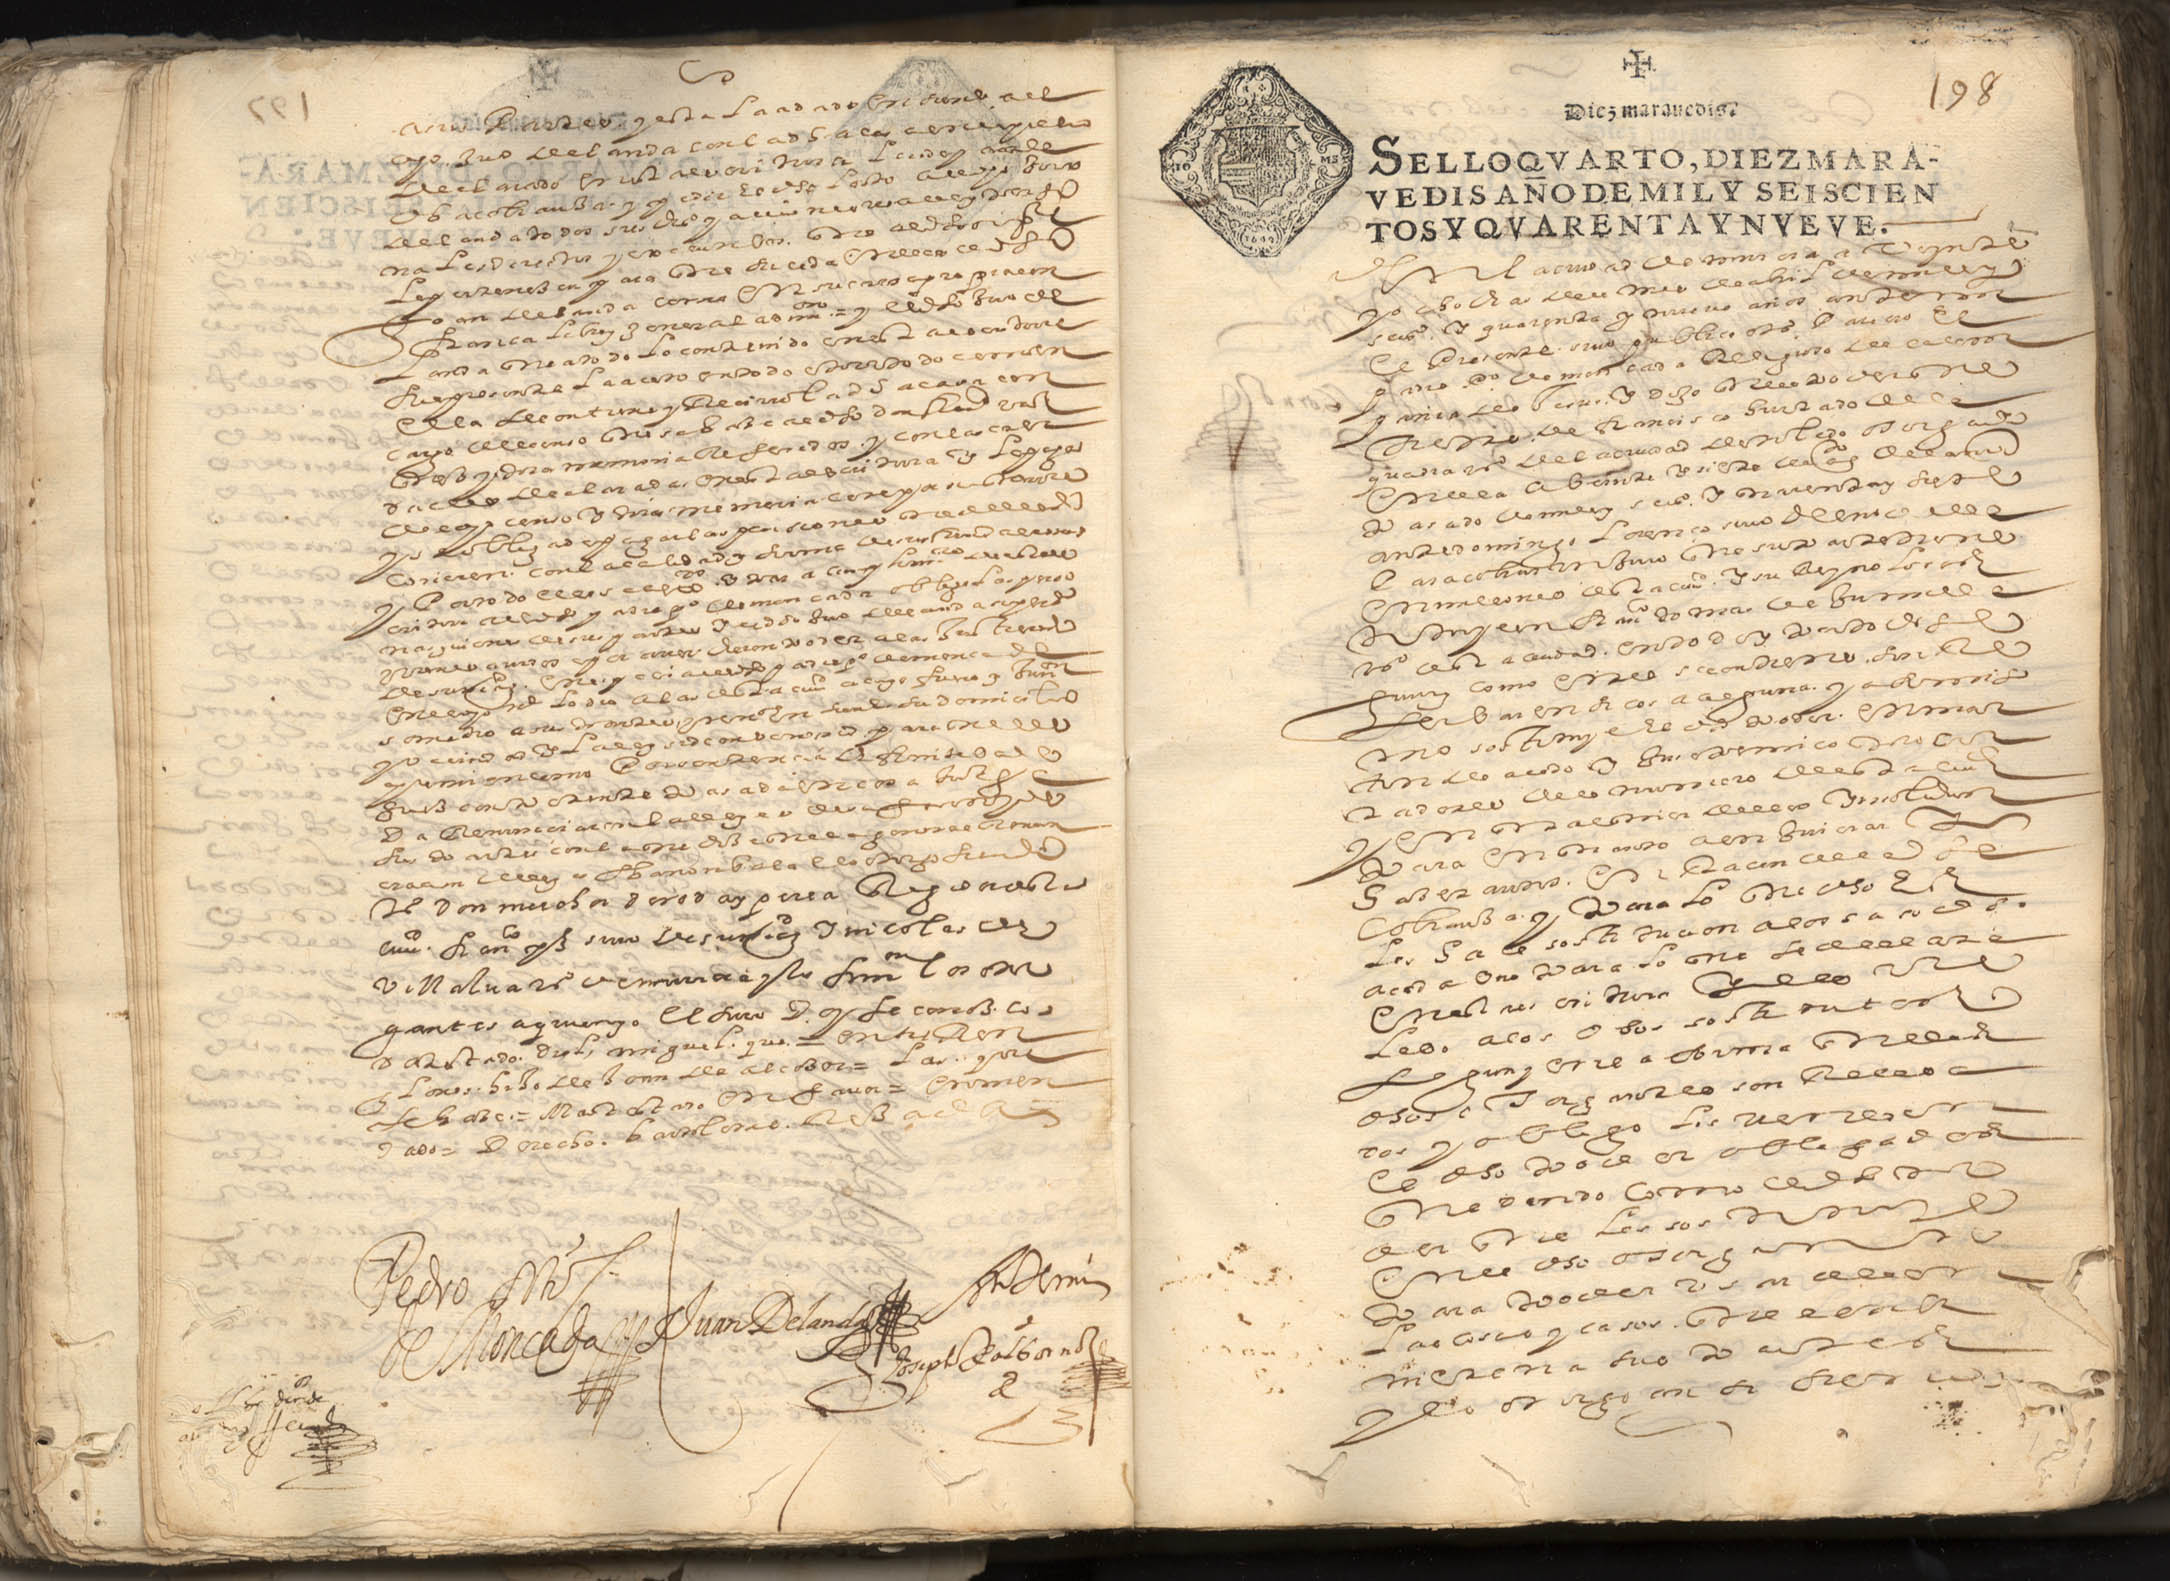 Registro de José Albornoz, Murcia de 1649.